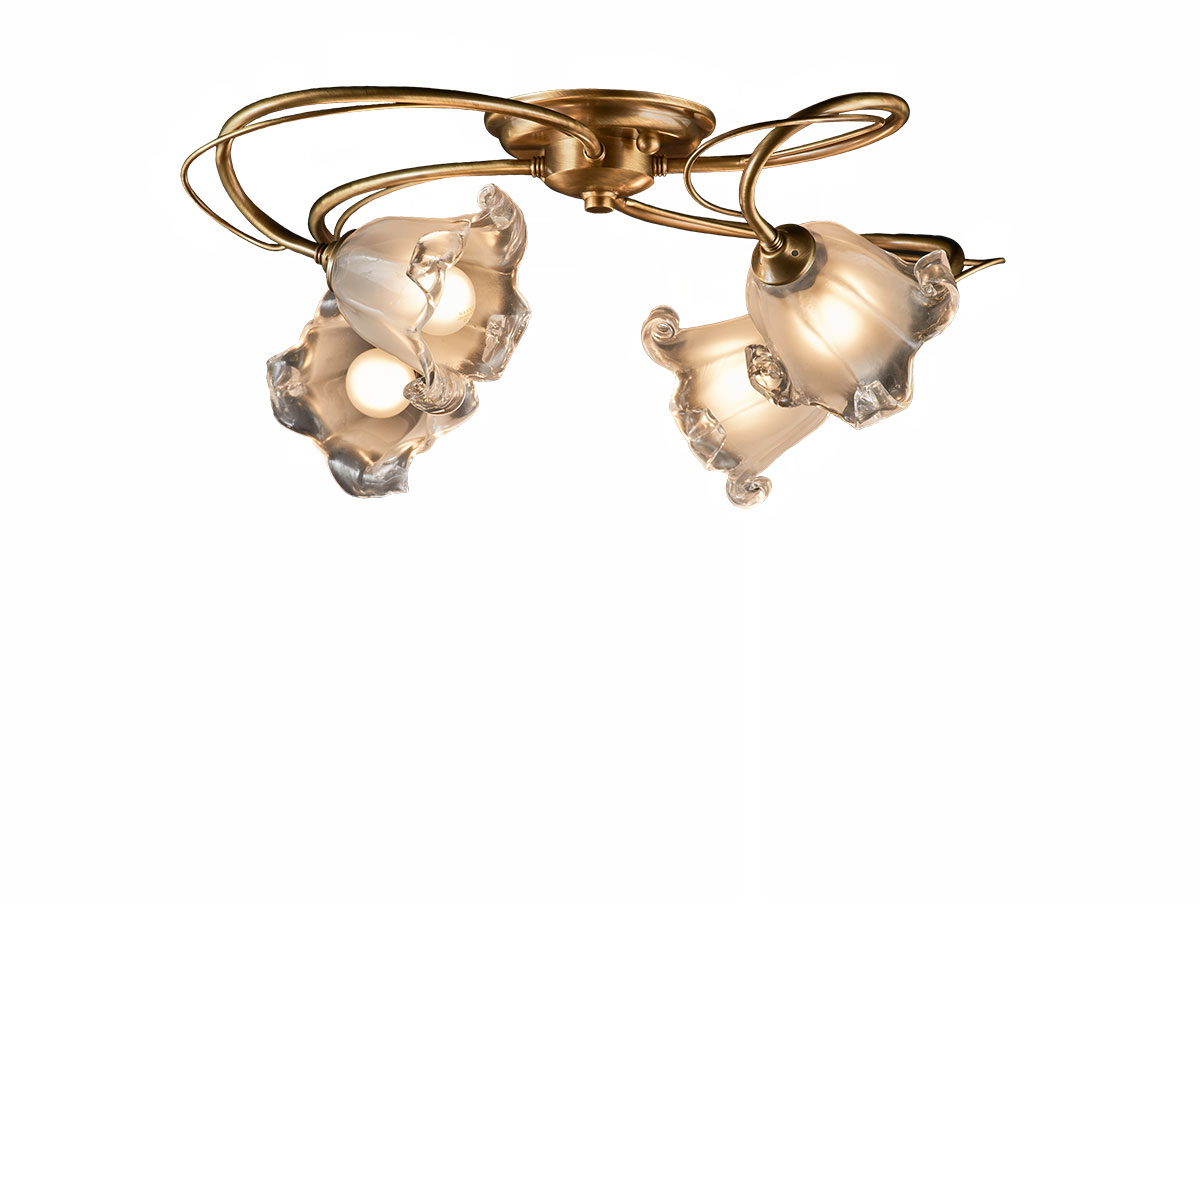 Φωτιστικό 4φωτο με κρύσταλλα Murano ΝΥΜΦΑΙΟ classic 4-bulb ceiling lamp with Murano crystals